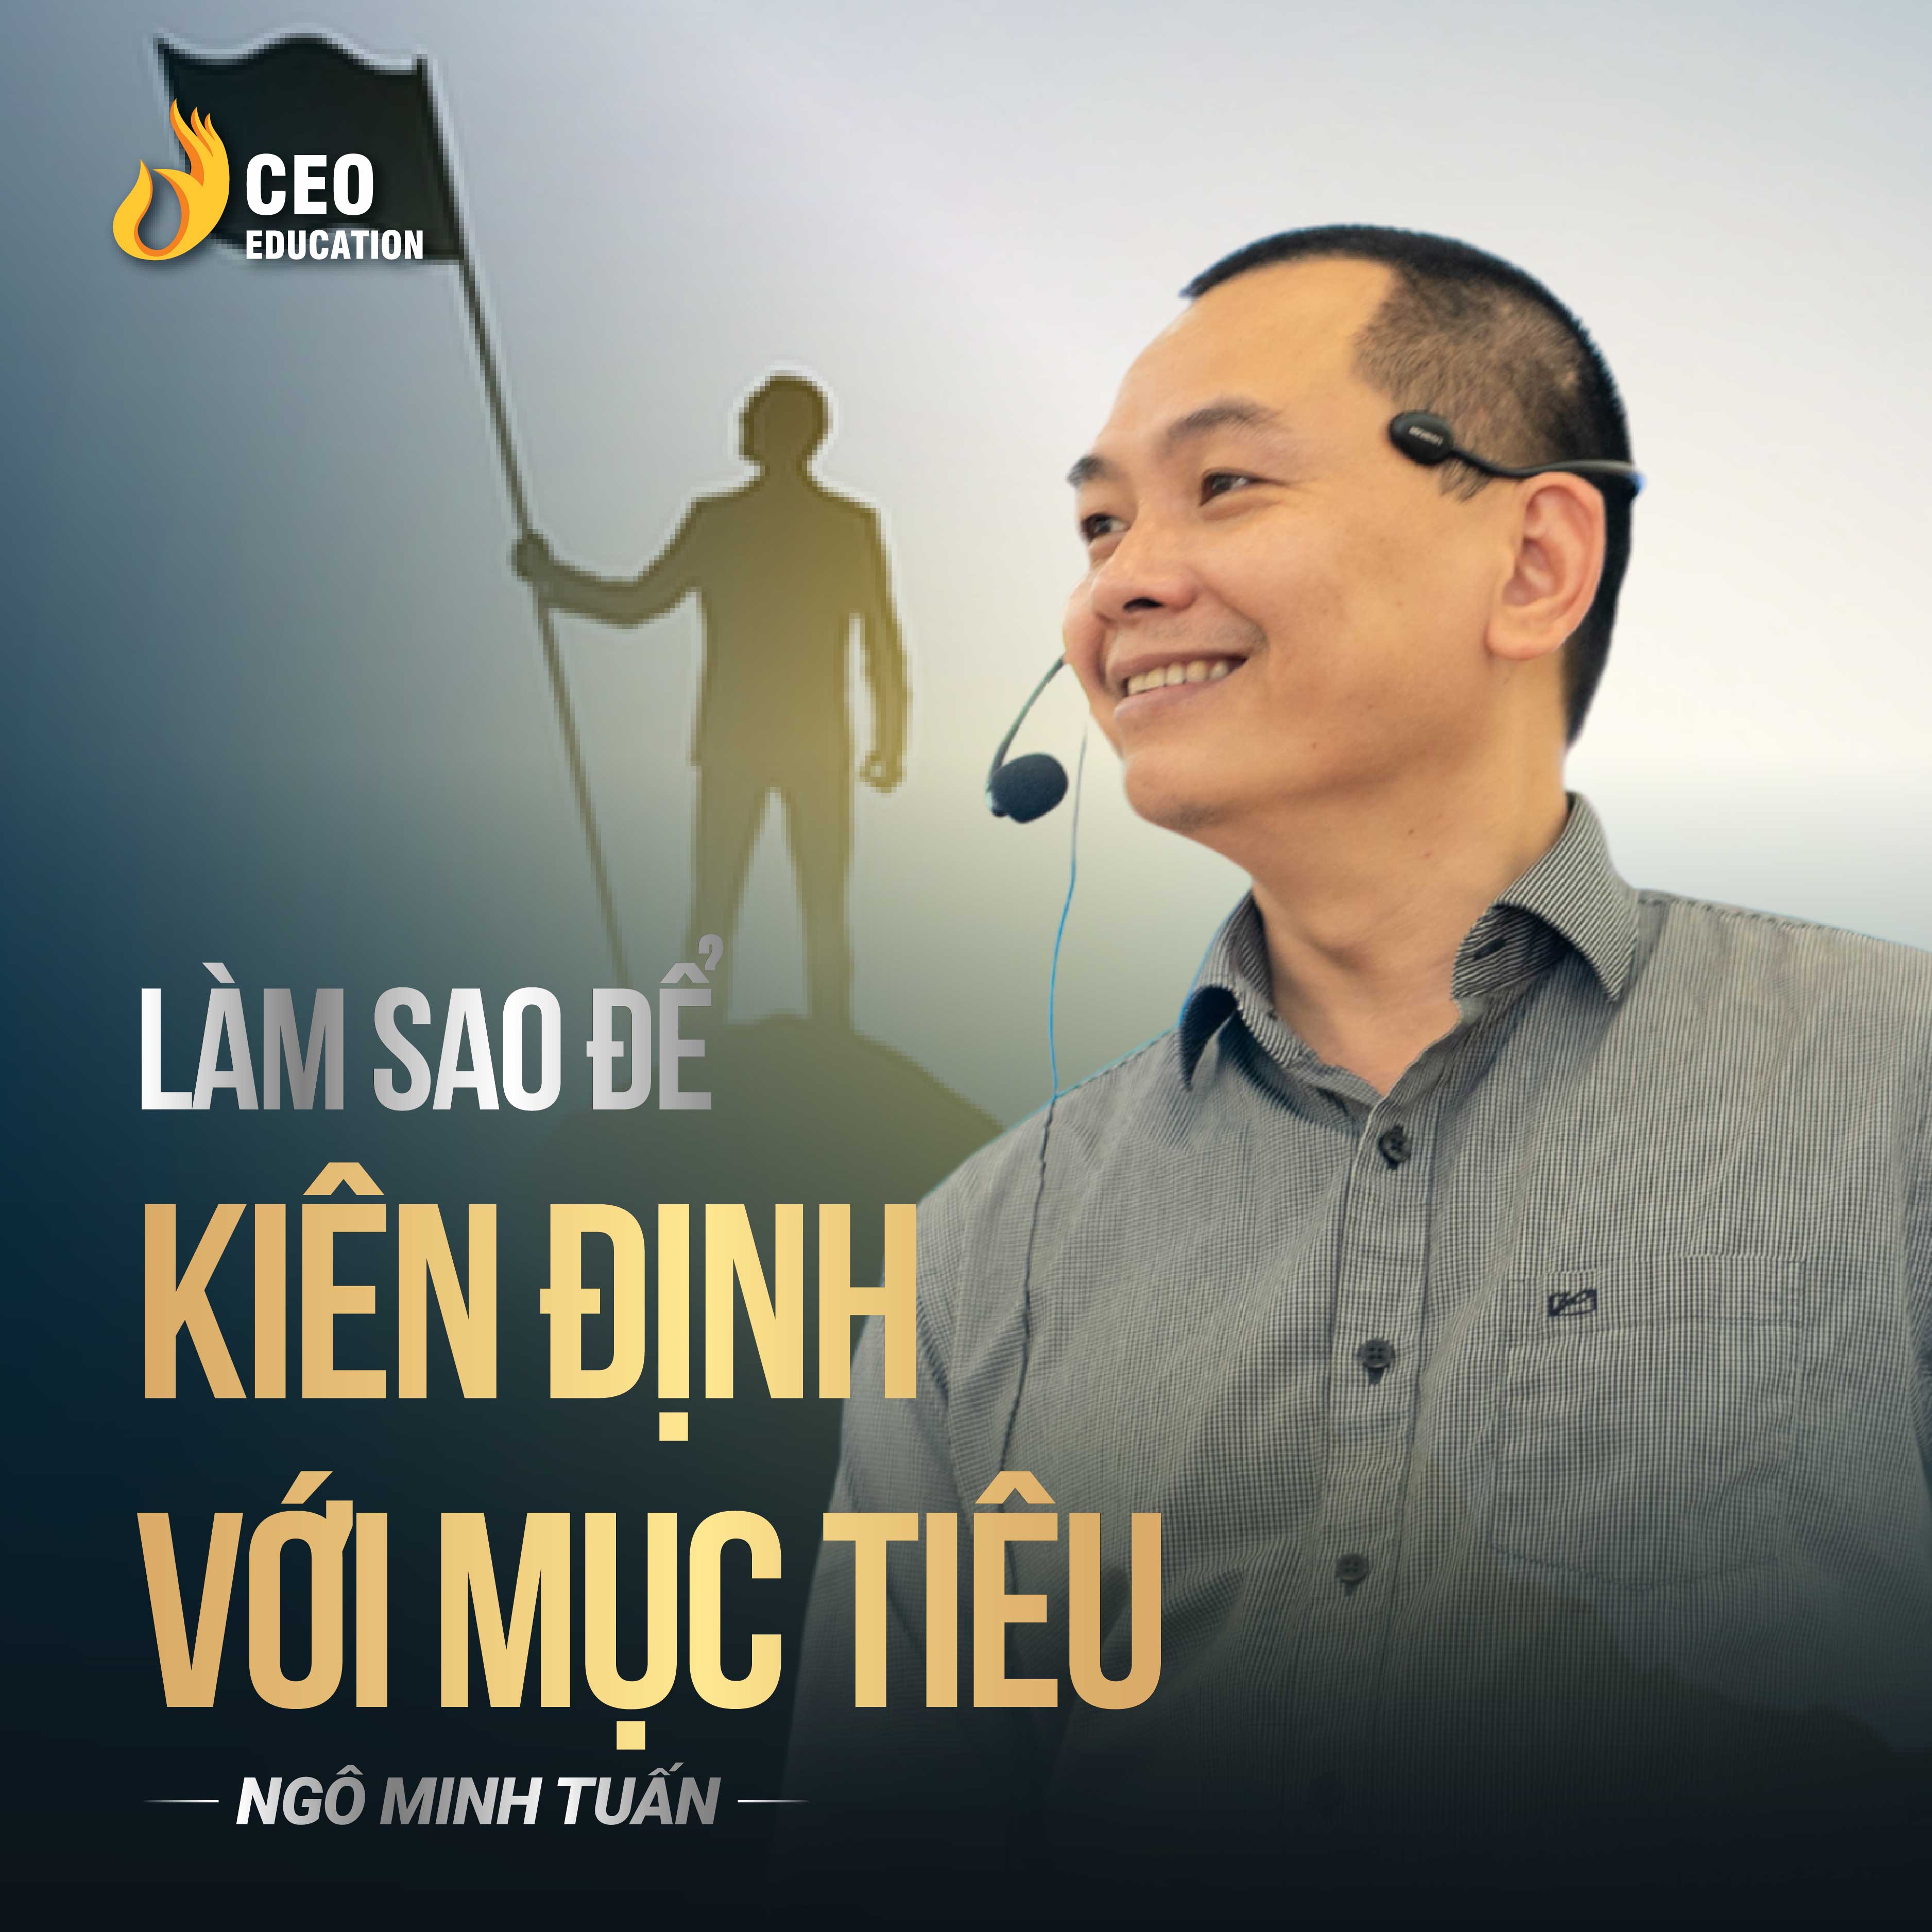 Làm sao để kiên định với mục tiêu | Ngô Minh Tuấn | Học Viện CEO Việt Nam